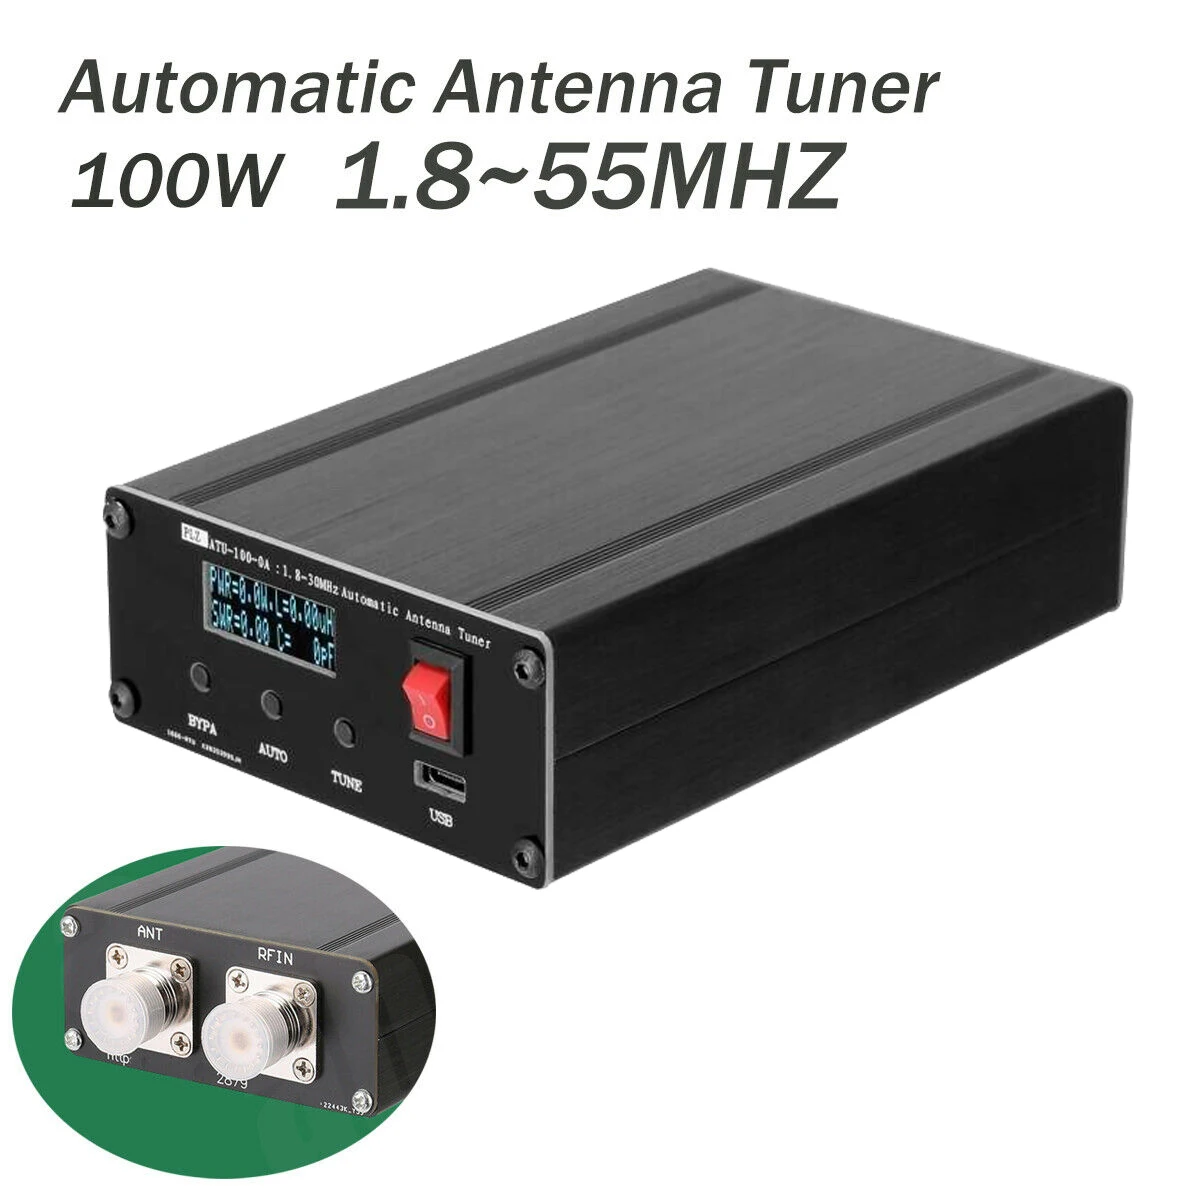 

ATU-100 1,8-55 МГц Автоматический антенный тюнер с OLED-экраном 0,96 дюйма в сборе с корпусом 100 Вт